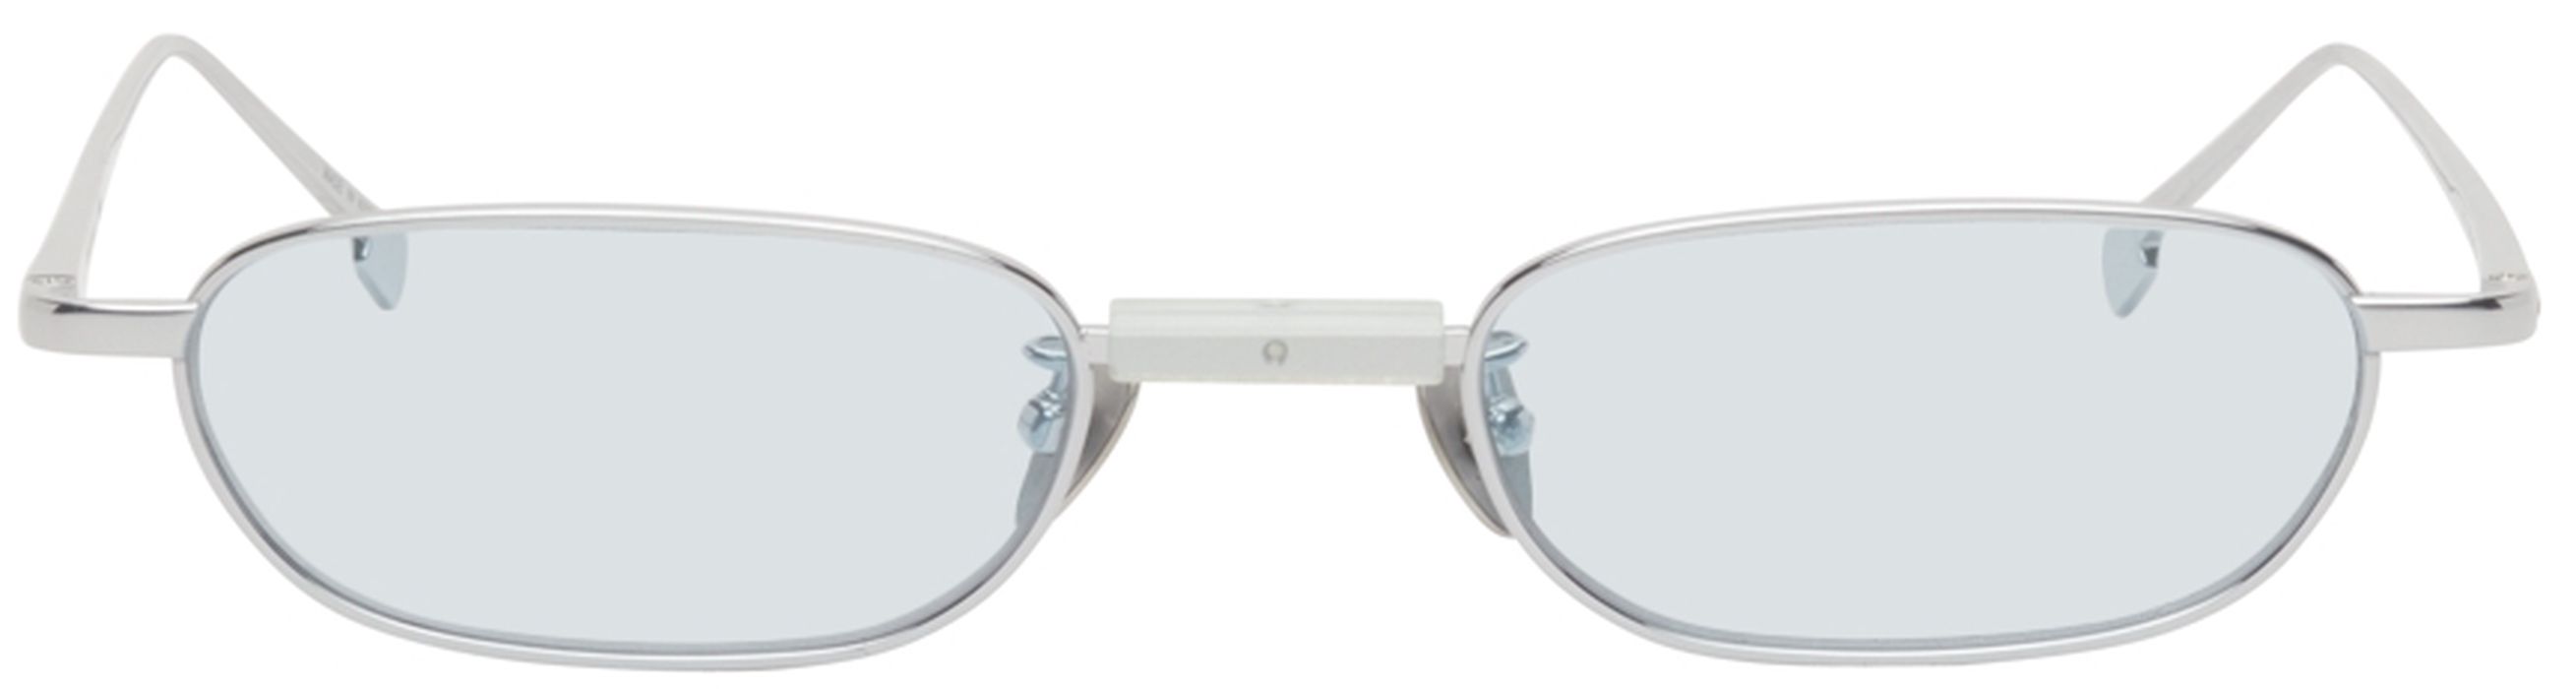 PROJEKT PRODUKT Silver & Blue Titanium GE-CC4 Sunglasses